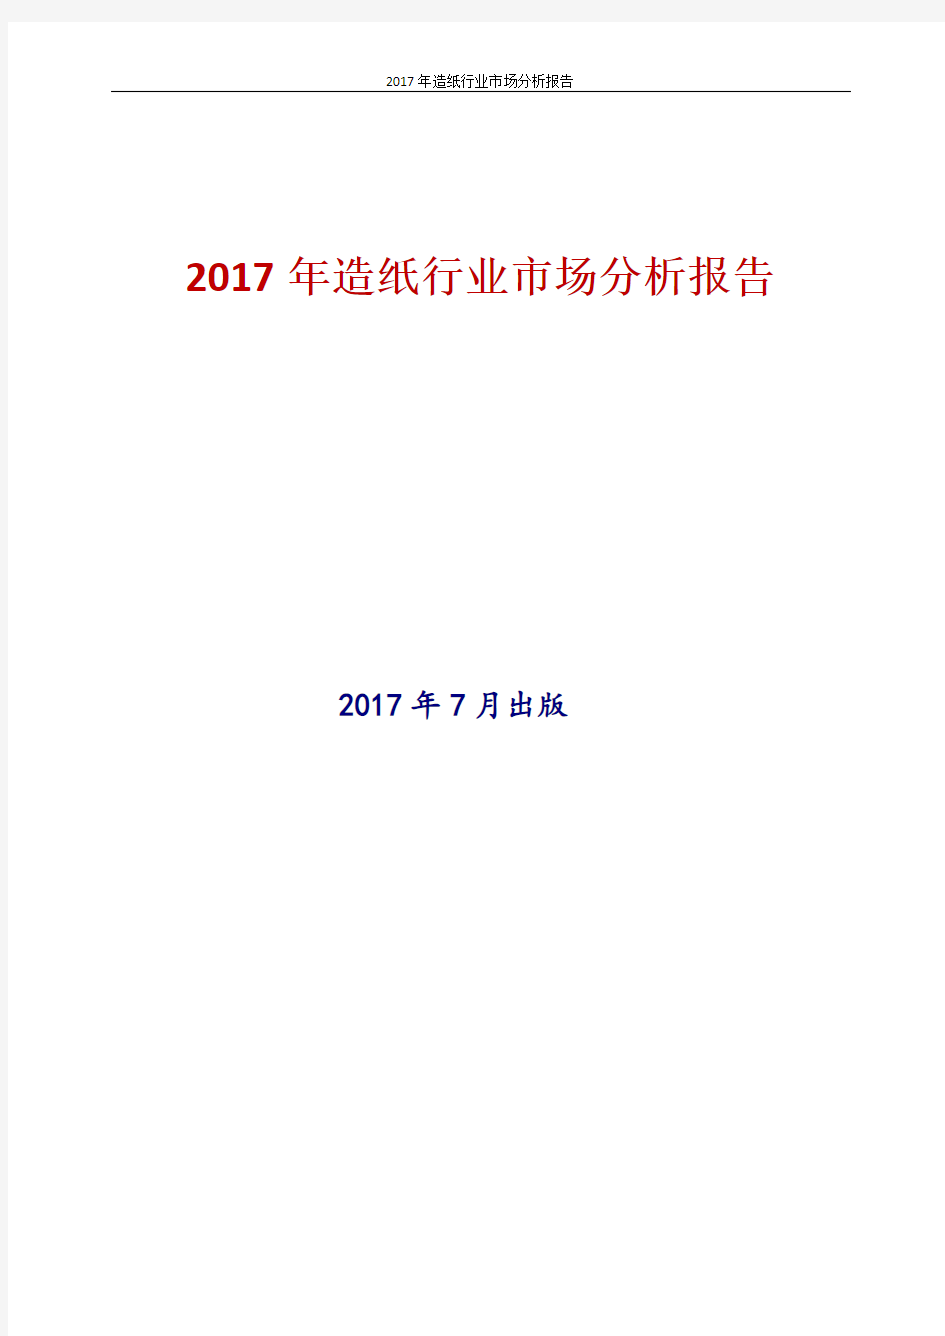 中国造纸行业市场分析报告2017年版